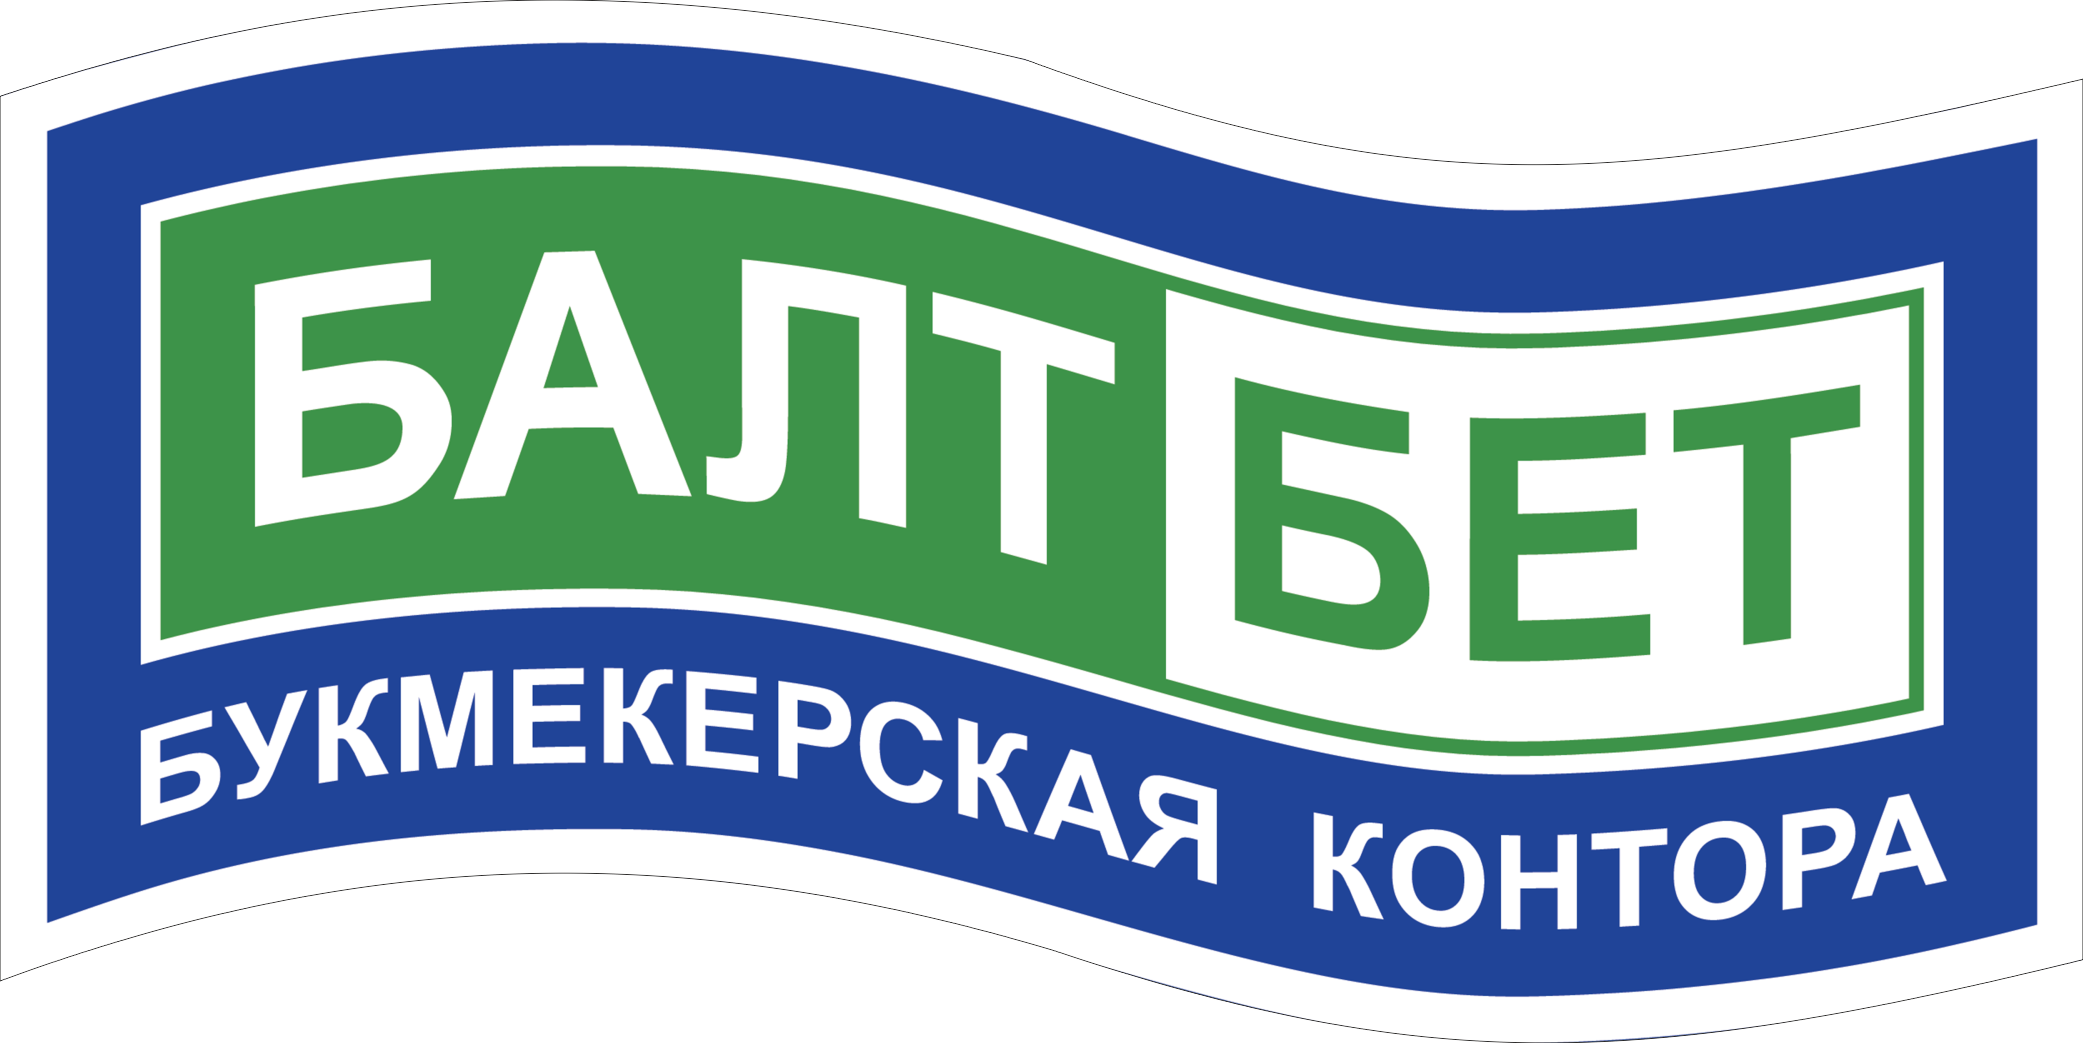 Baltbet.ru